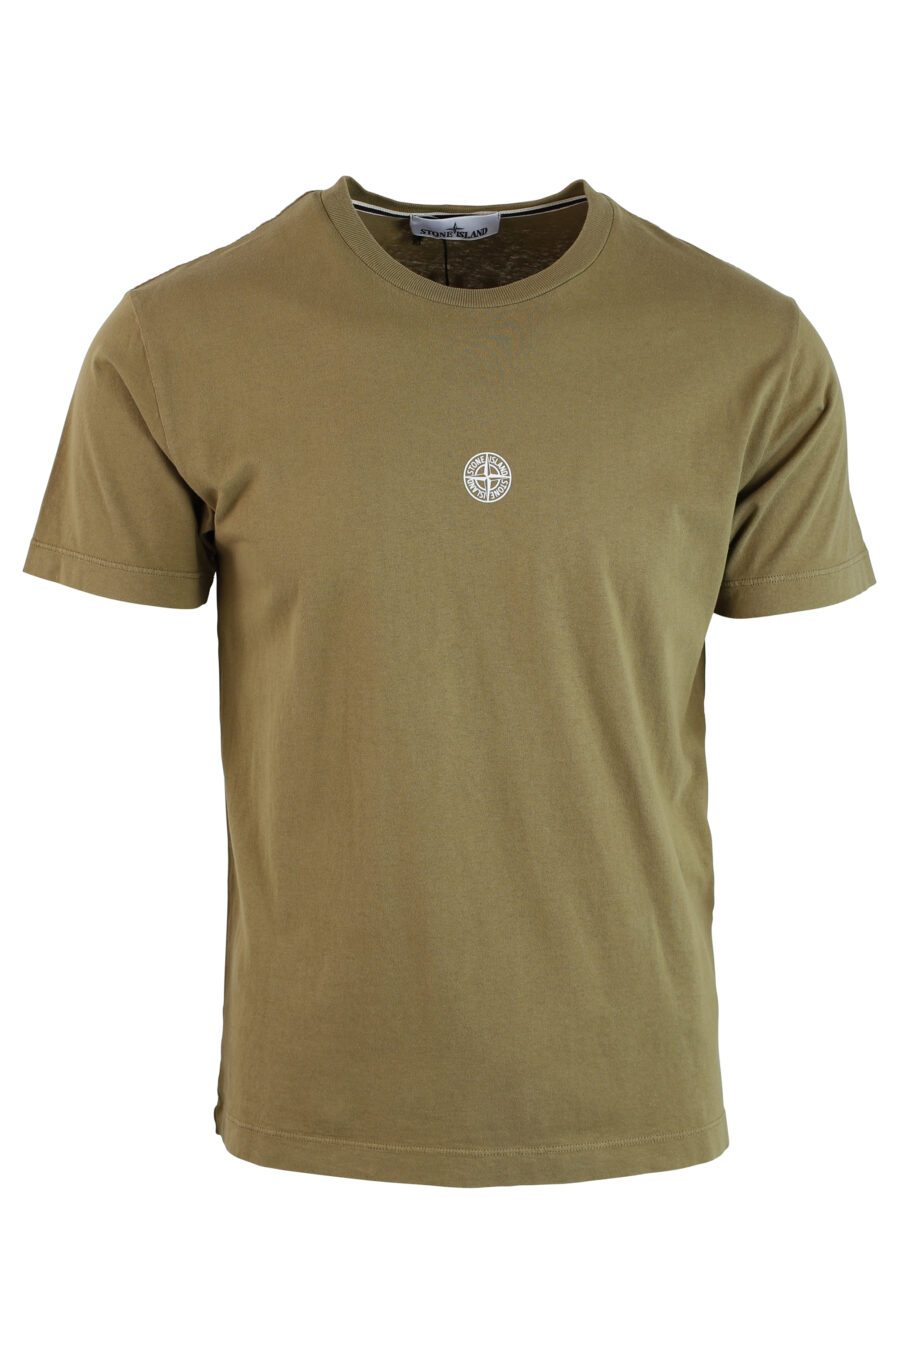 Camiseta verde militar con minilogo centrado y estampado detras - IMG 0238